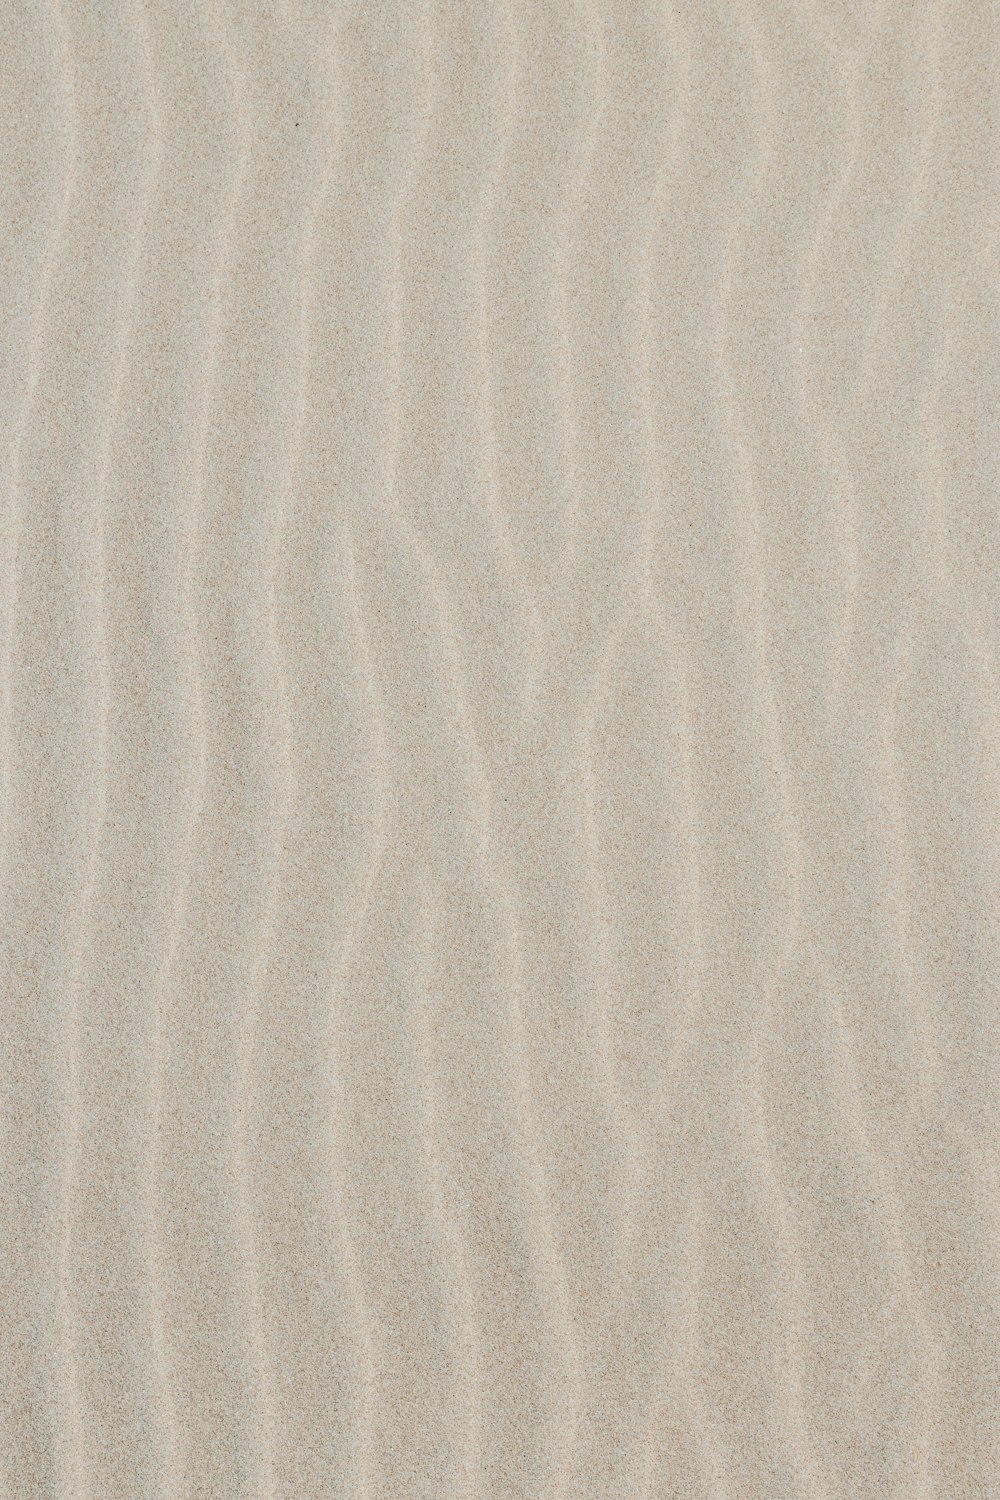 500개 이상의 모래 질감 사진 [Hd] | Unsplash에서 무료 이미지 다운로드